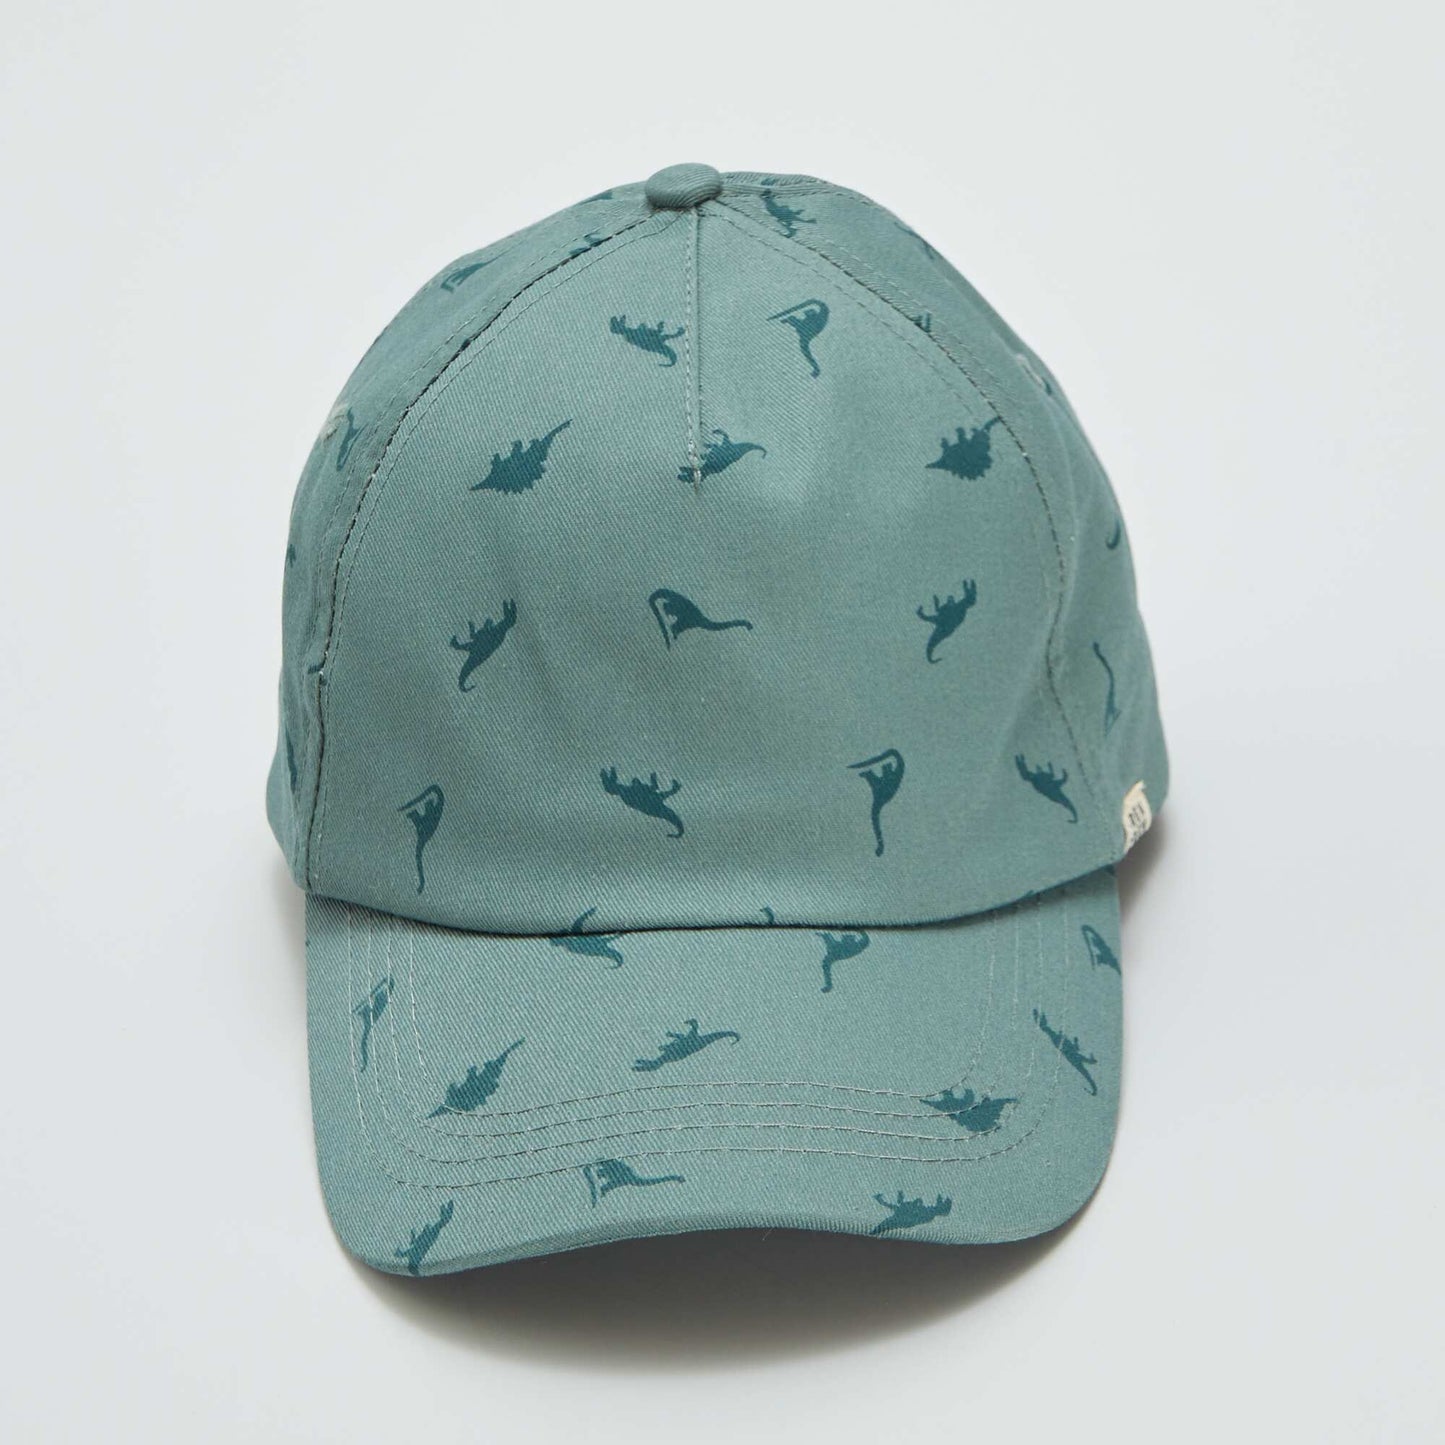 Dinosaur printed cap KHAKI